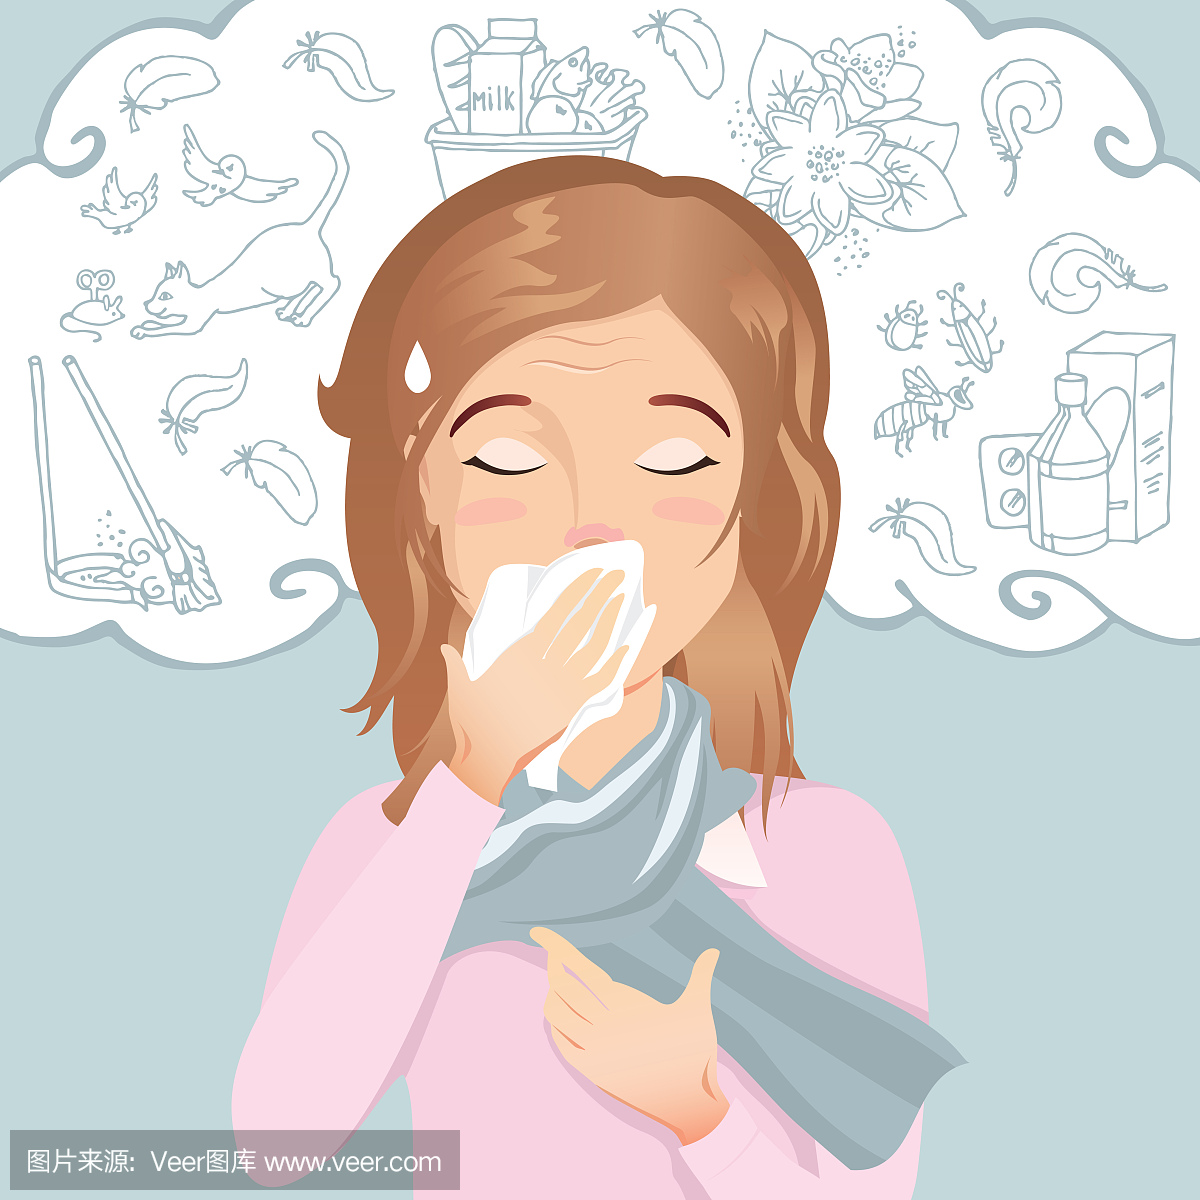 年轻女性有过敏,流鼻涕和咳嗽。对灰尘,花粉,动